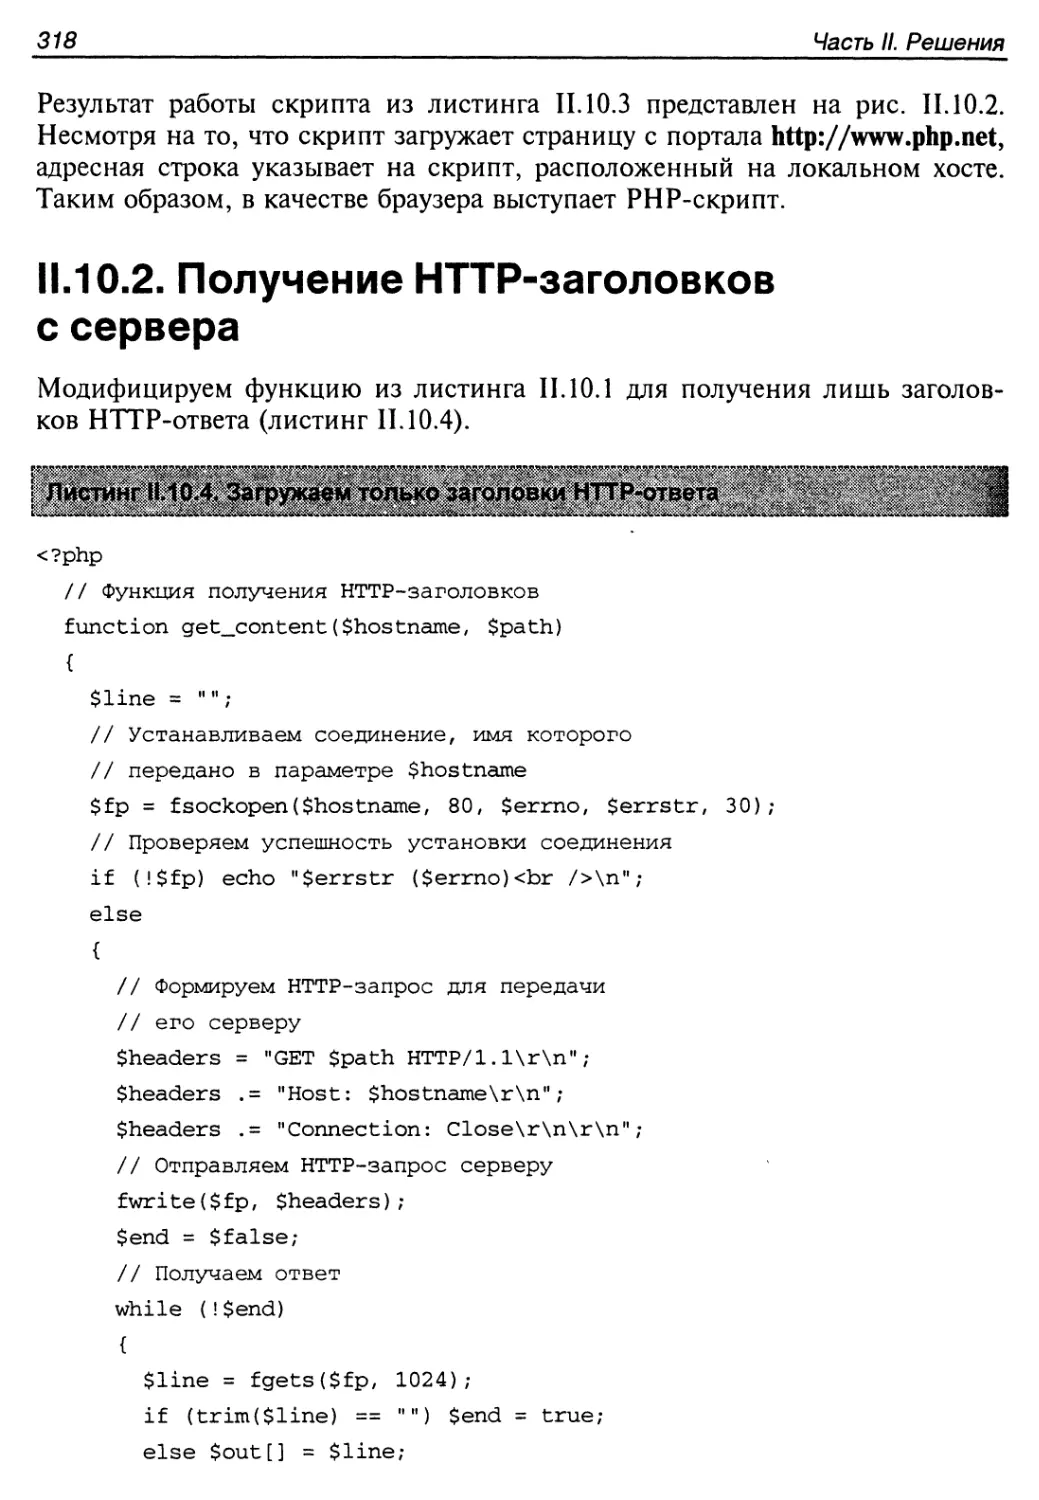 II.10.2. Получение HTTP-заголовков с сервера